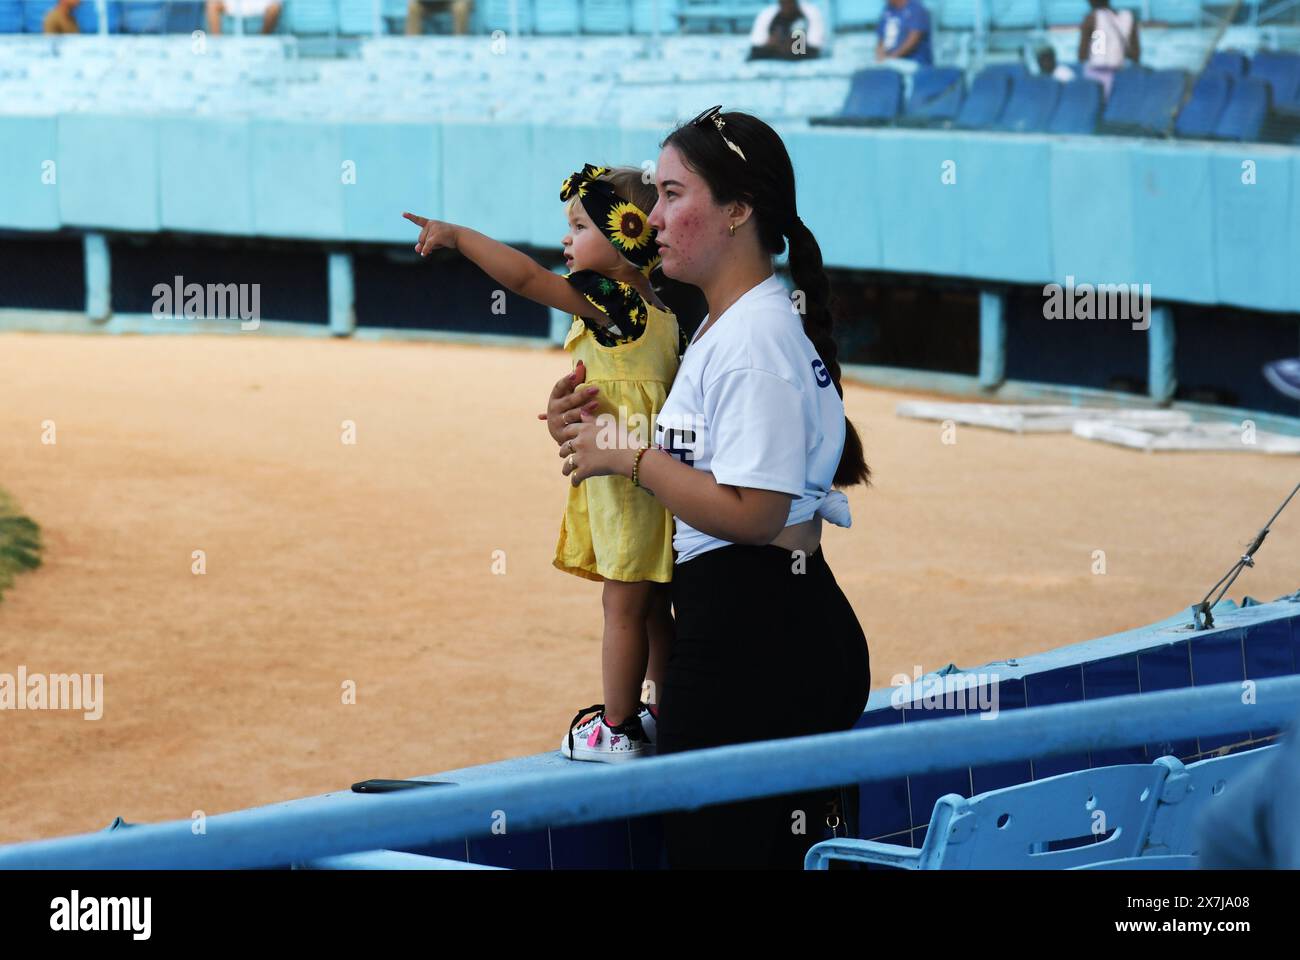 Una ragazza cubana entusiasta di vedere un'immagine di suo padre sul jumbotron a una partita di baseball a l'Avana, Cuba, e indica che la madre la tiene e guarda. Foto Stock